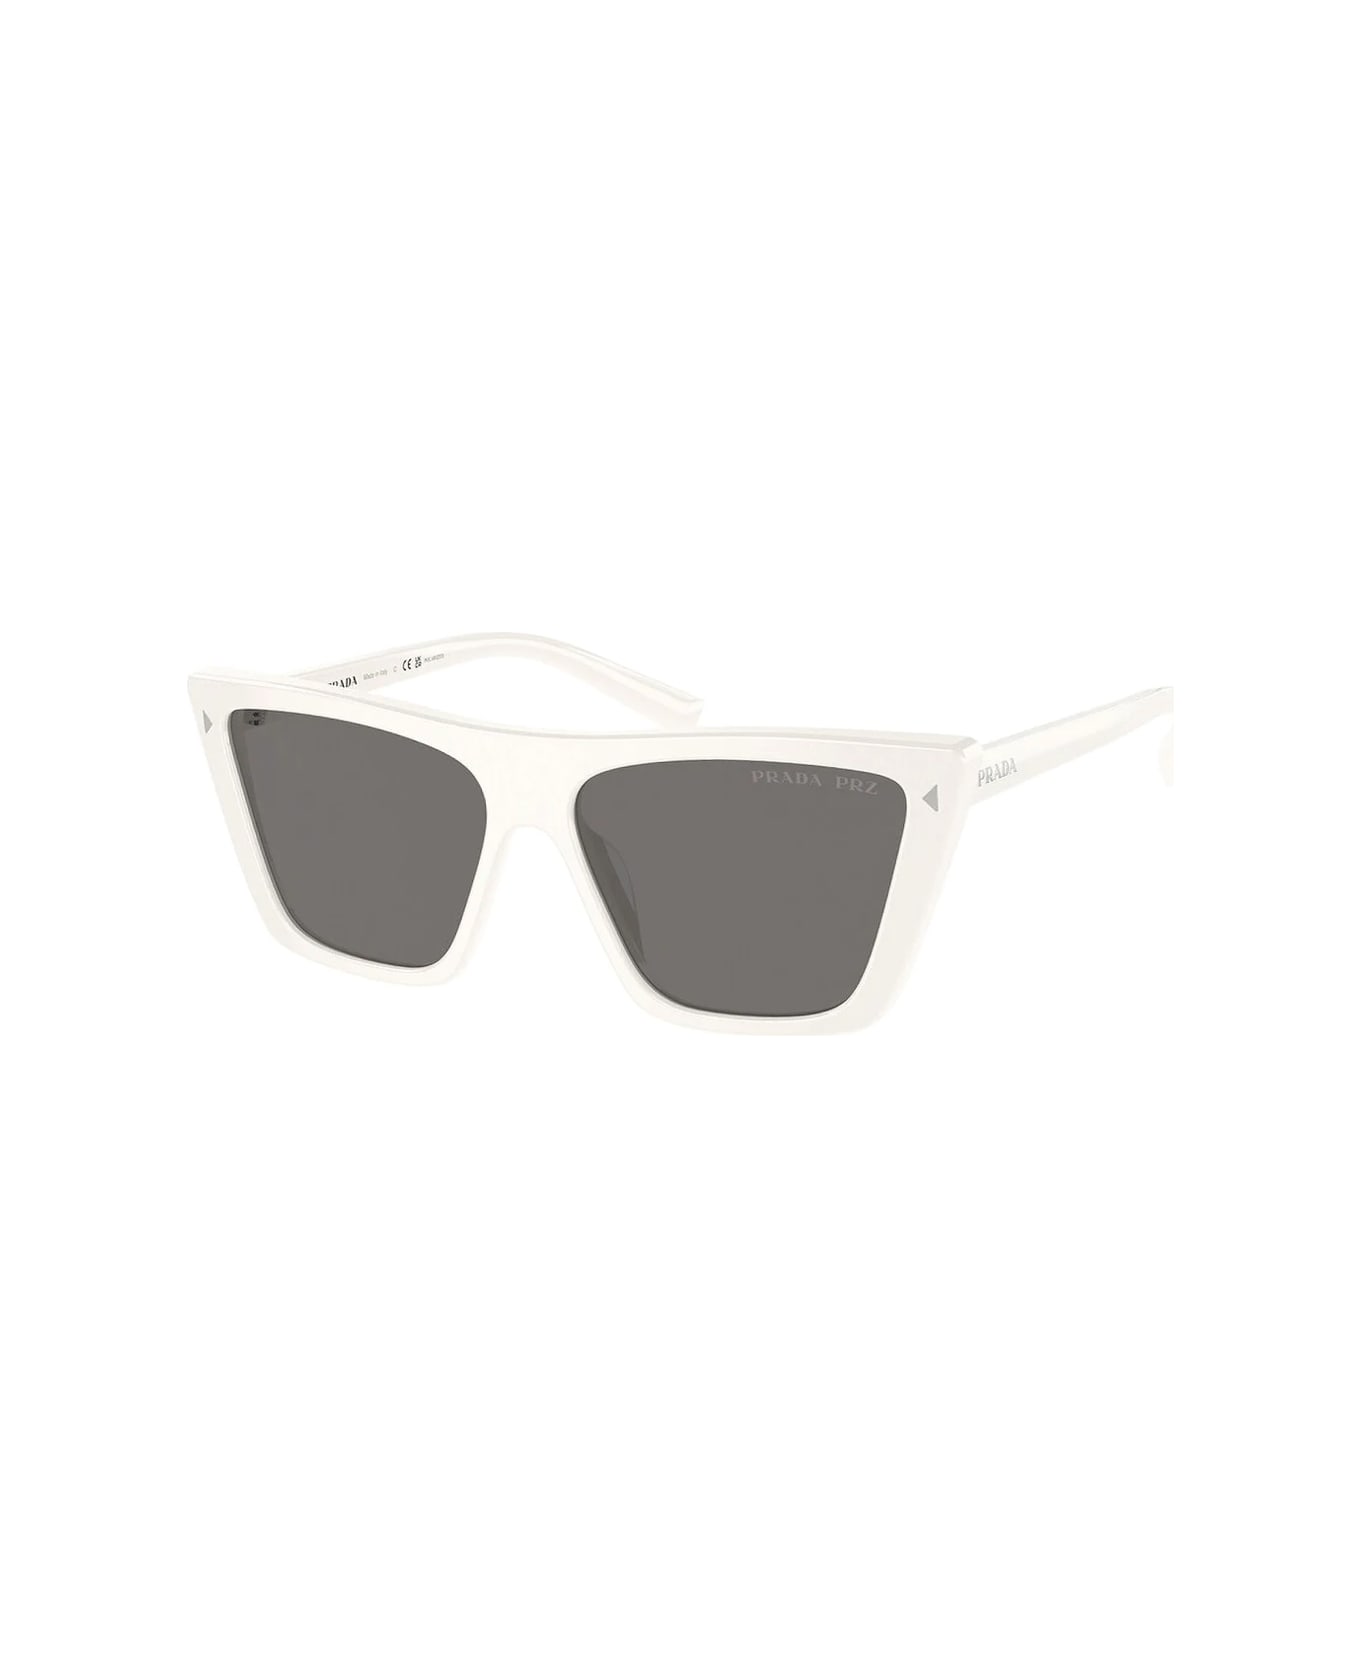 Prada Eyewear Pr 21zs 1425z1 Sunglasses - Bianco